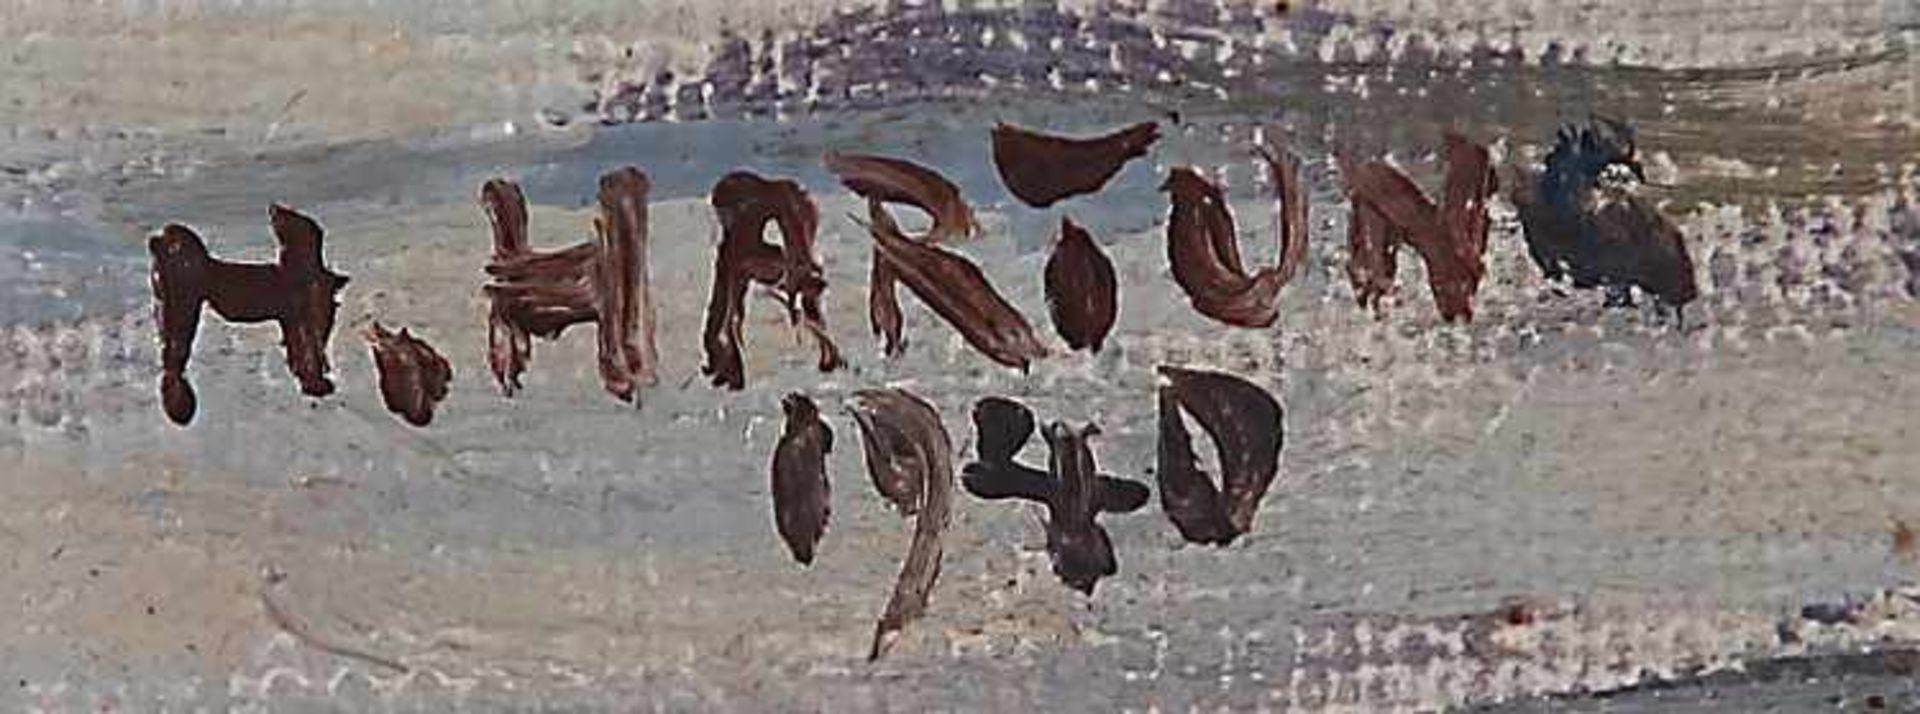 Hartung, Heinrich IV - Bild 2 aus 2